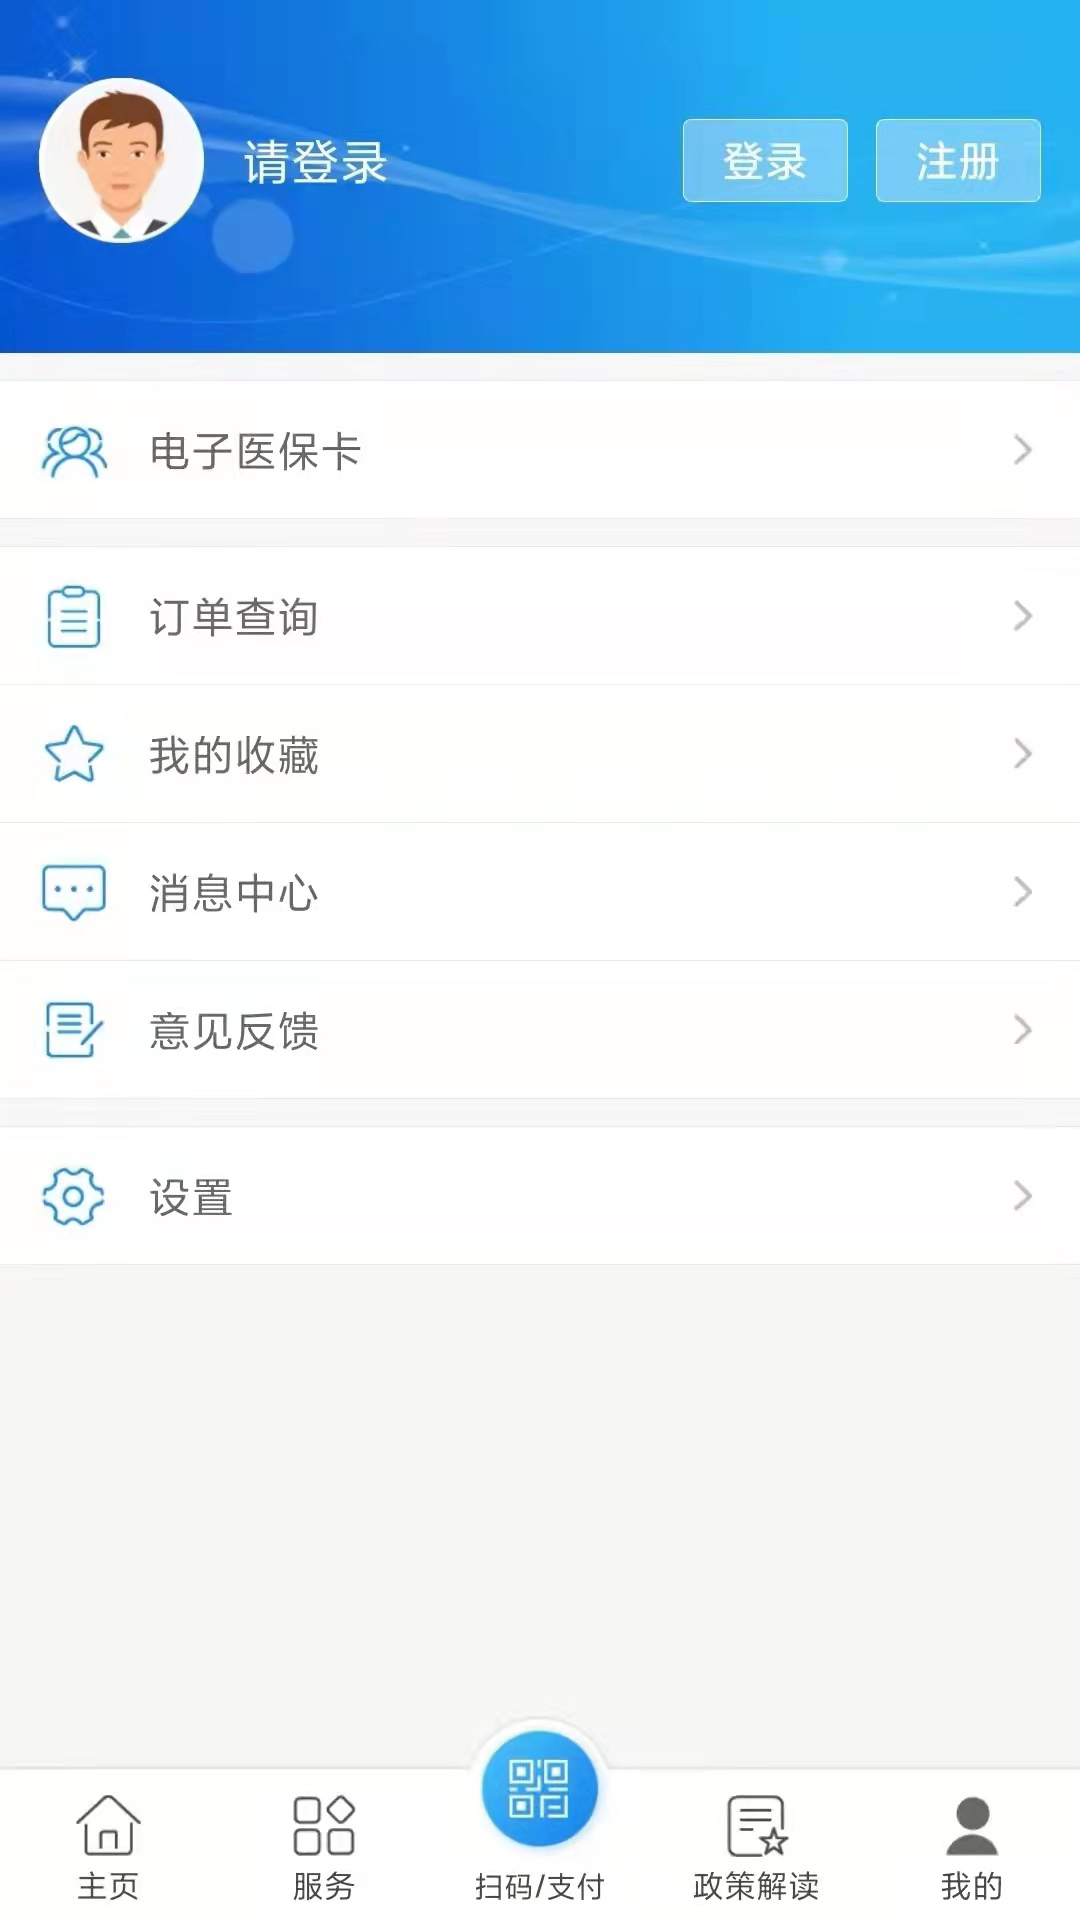 南通医保app官方下载 第1张图片